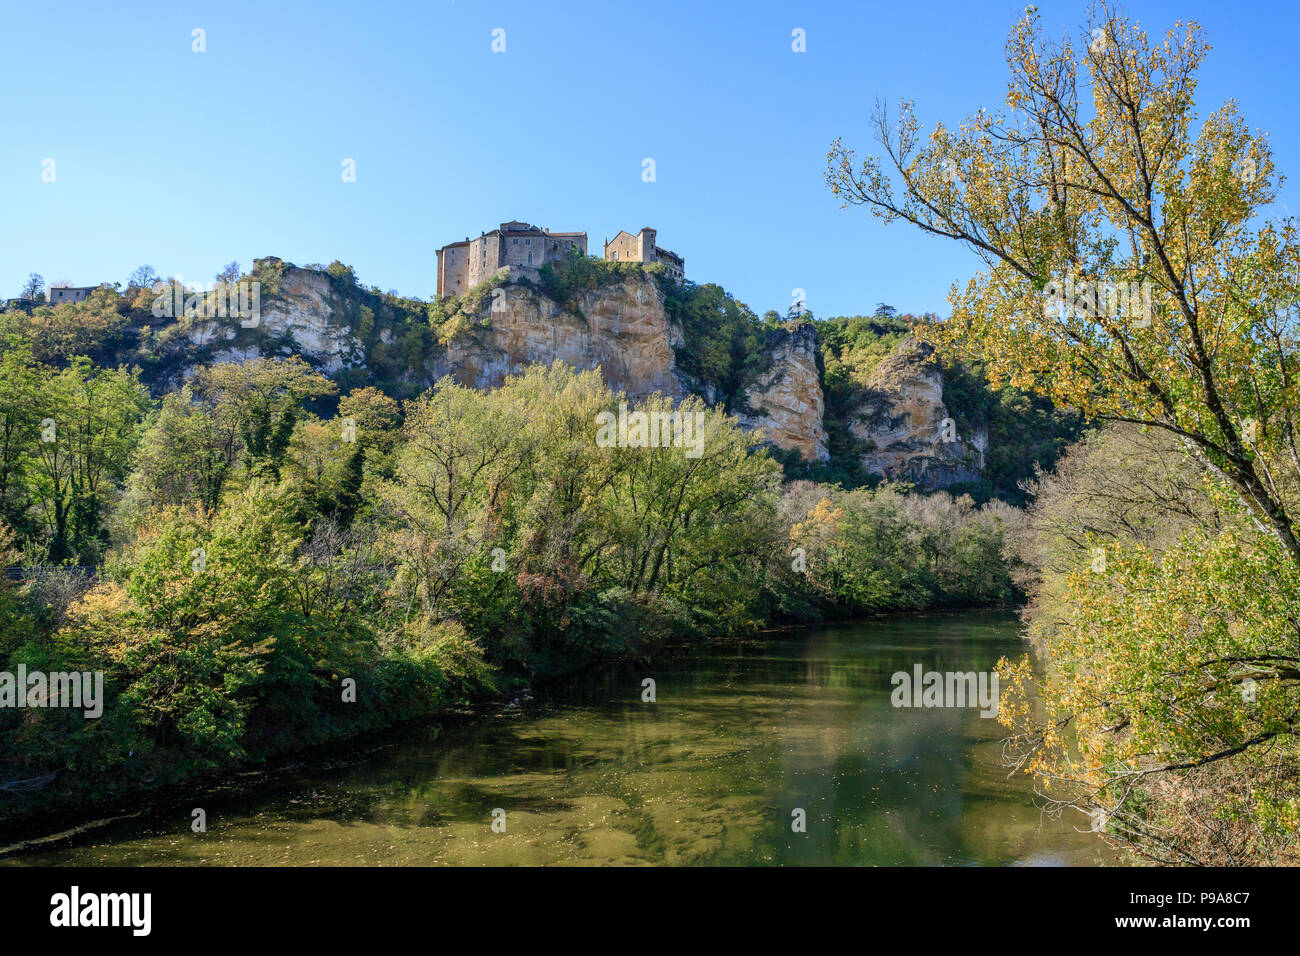 France, Tarn et Garonne, Quercy, Bruniquel, labelled Les Plus Beaux Villages de France (The Most beautiful Villages of France), the castles // France, Stock Photo